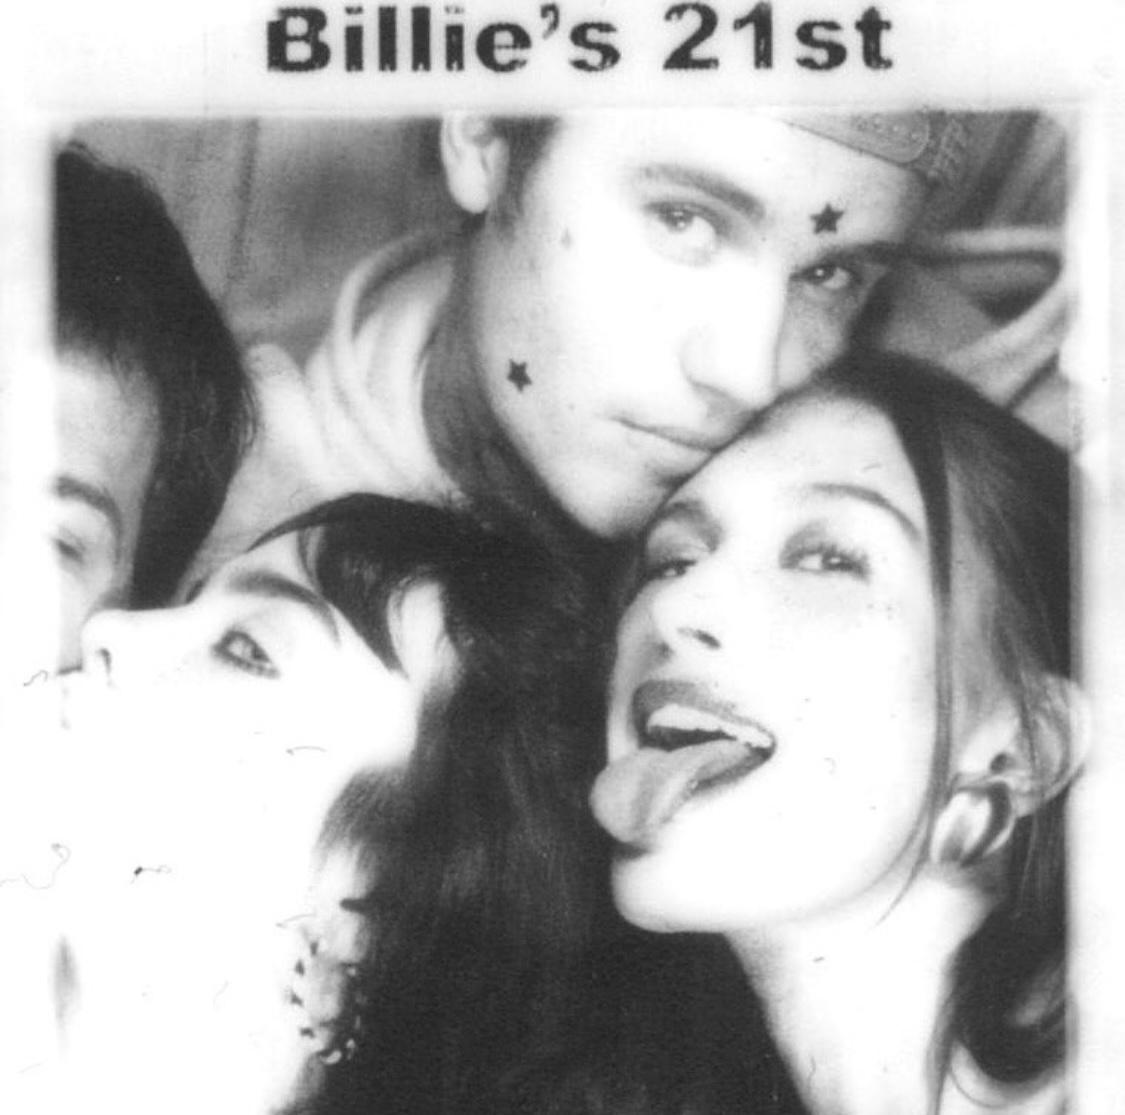 جاستين بيبر وزوجته مع بيلي أيليش في حفلة عيد ميلادها - إنستغرام